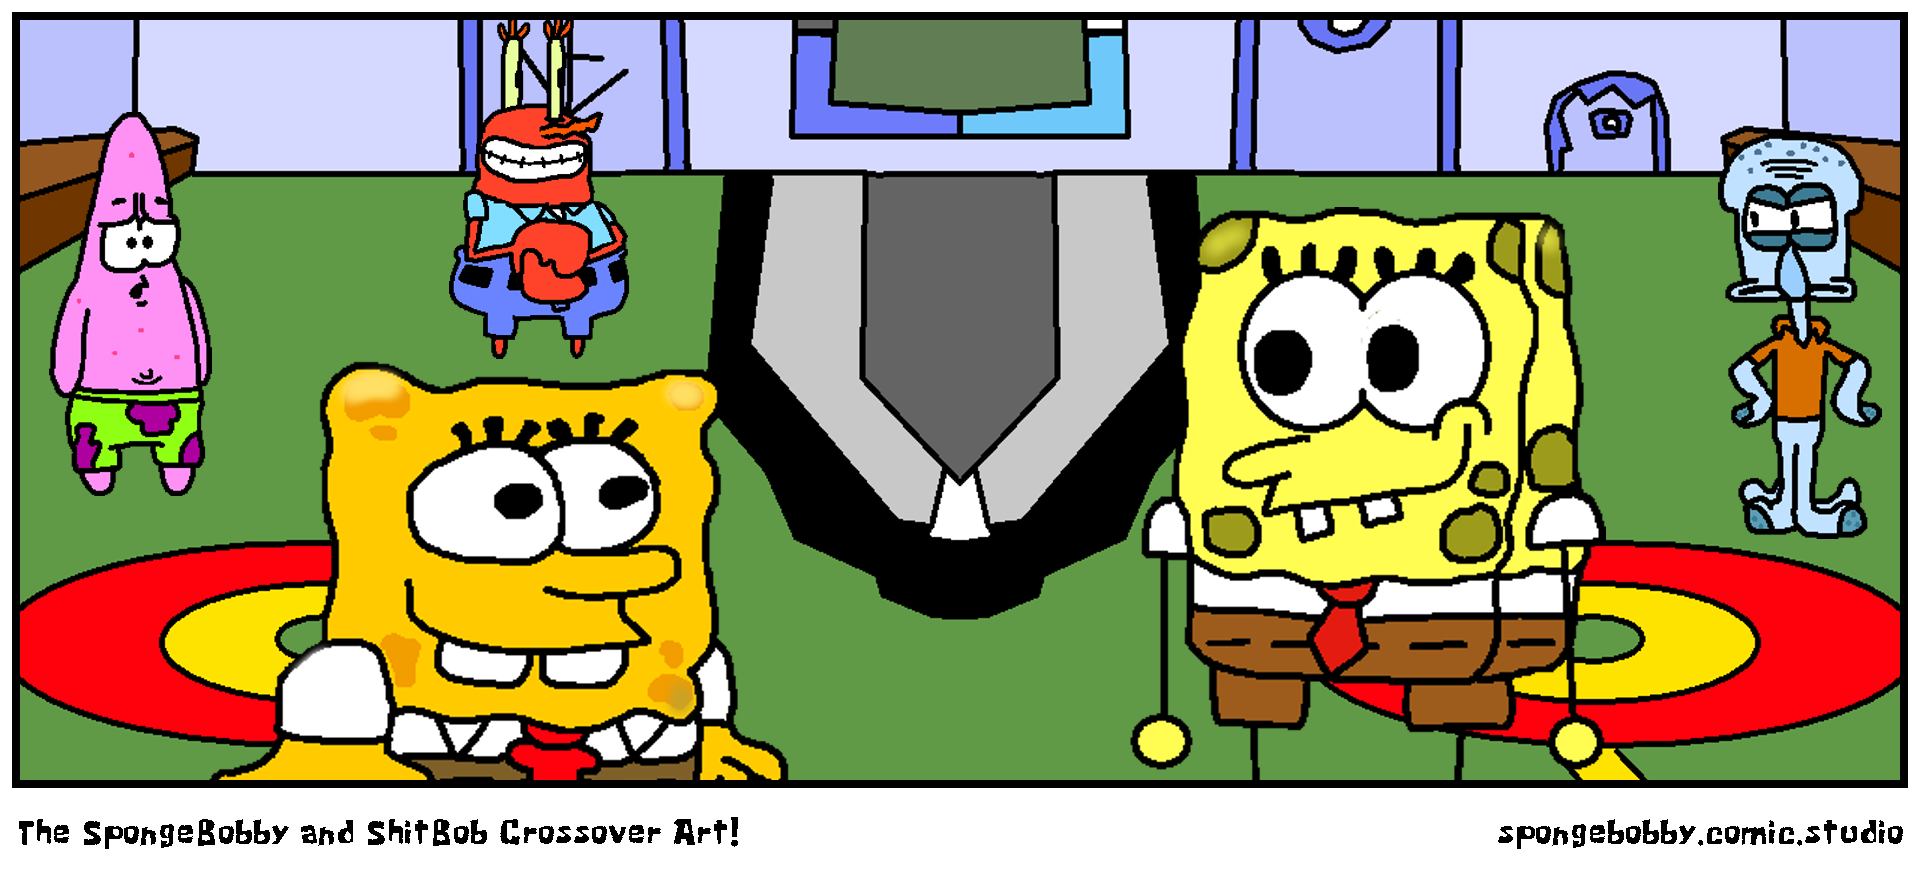 The SpongeBobby and ShitBob Crossover Art!